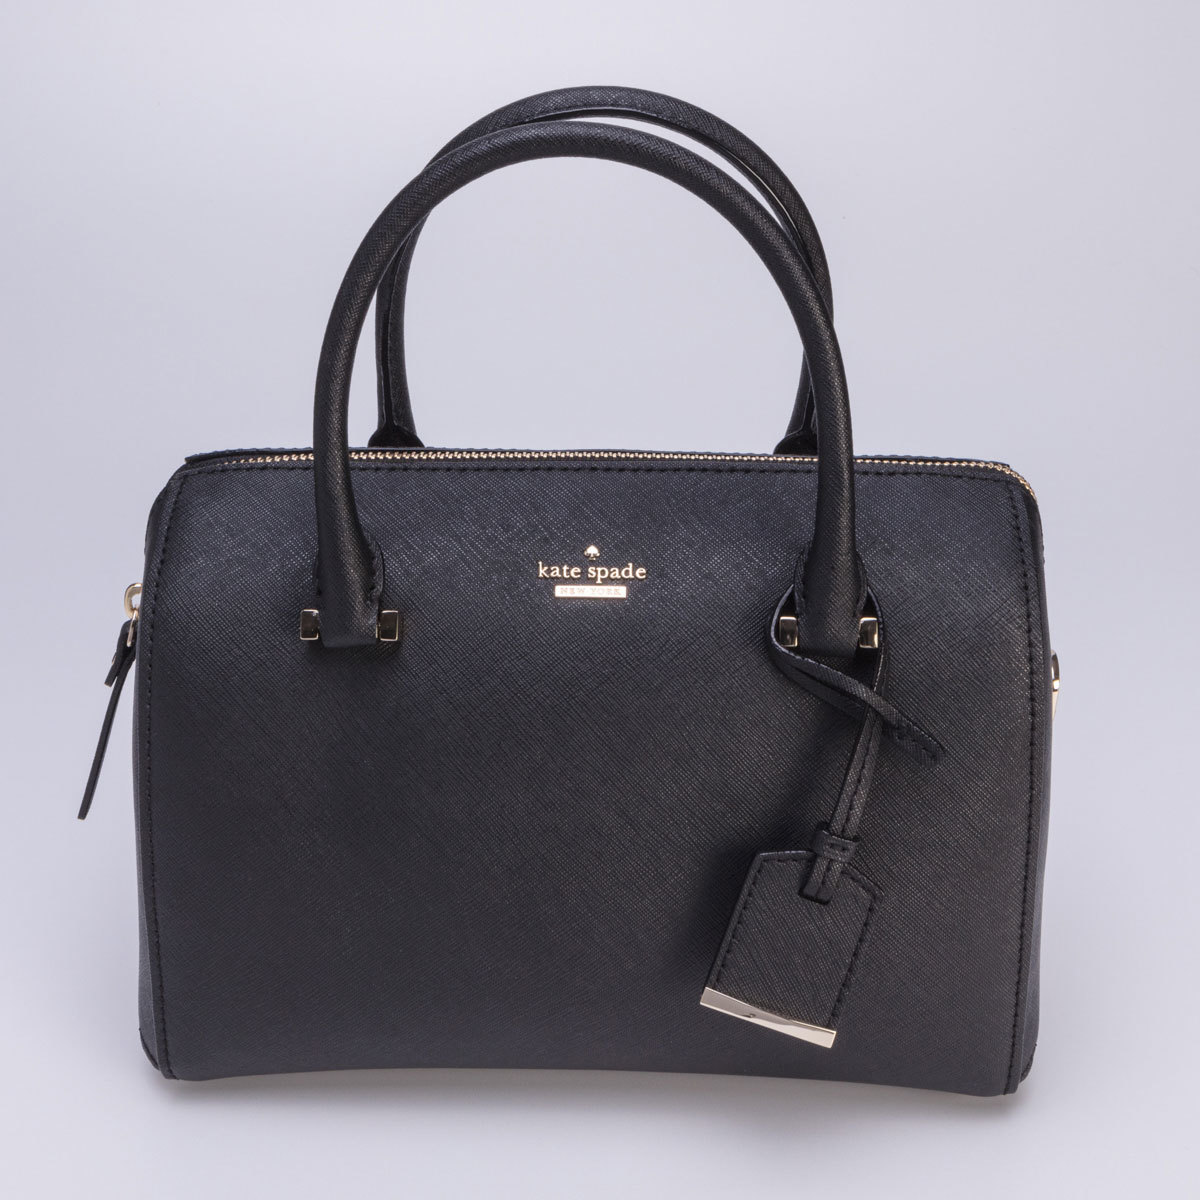 Kate Spade Cameron Street Large Lane Handbag, Black